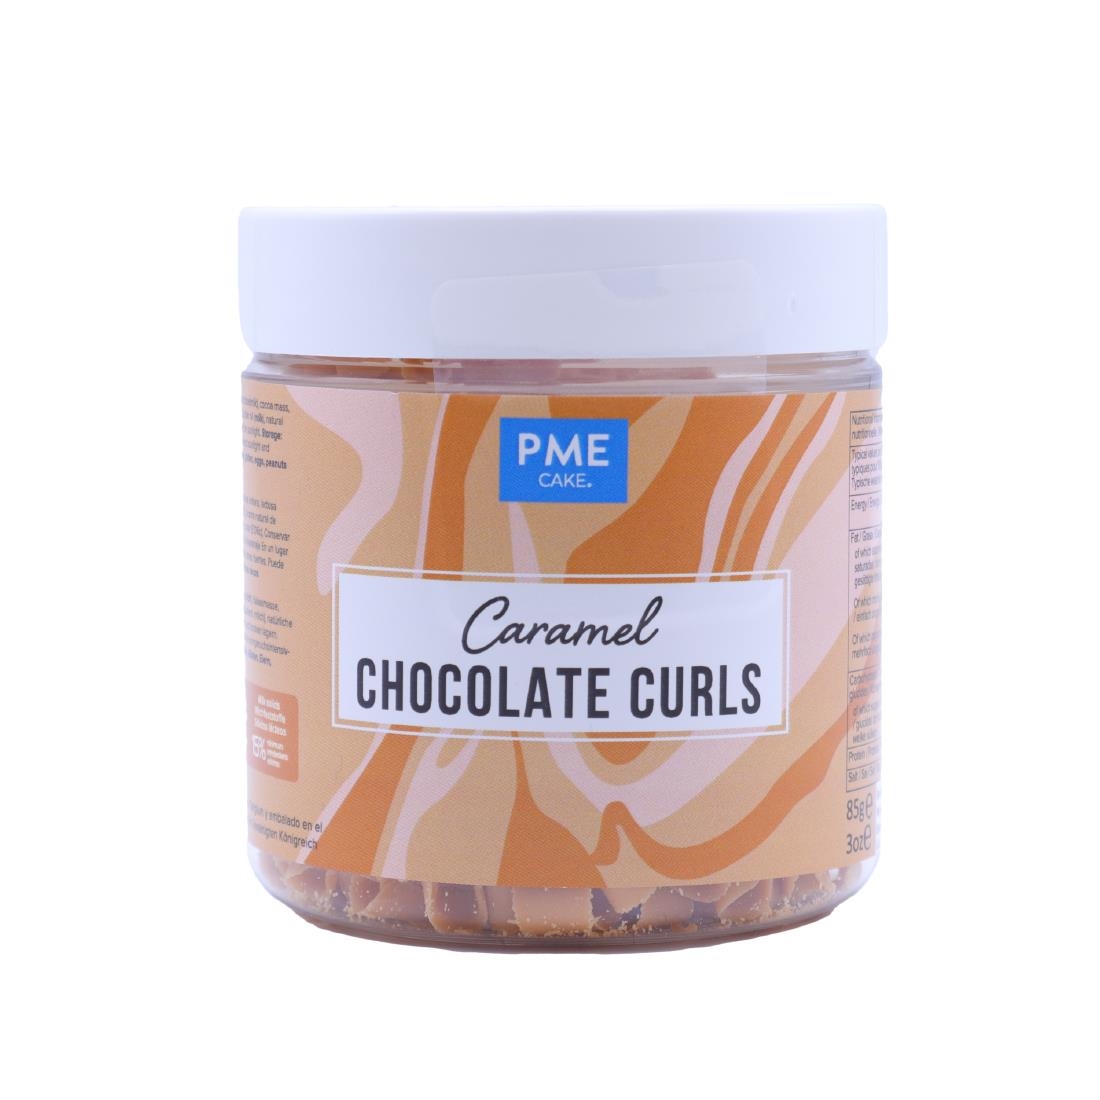 PME Chocolate Curls Caramel 85g (HU285)